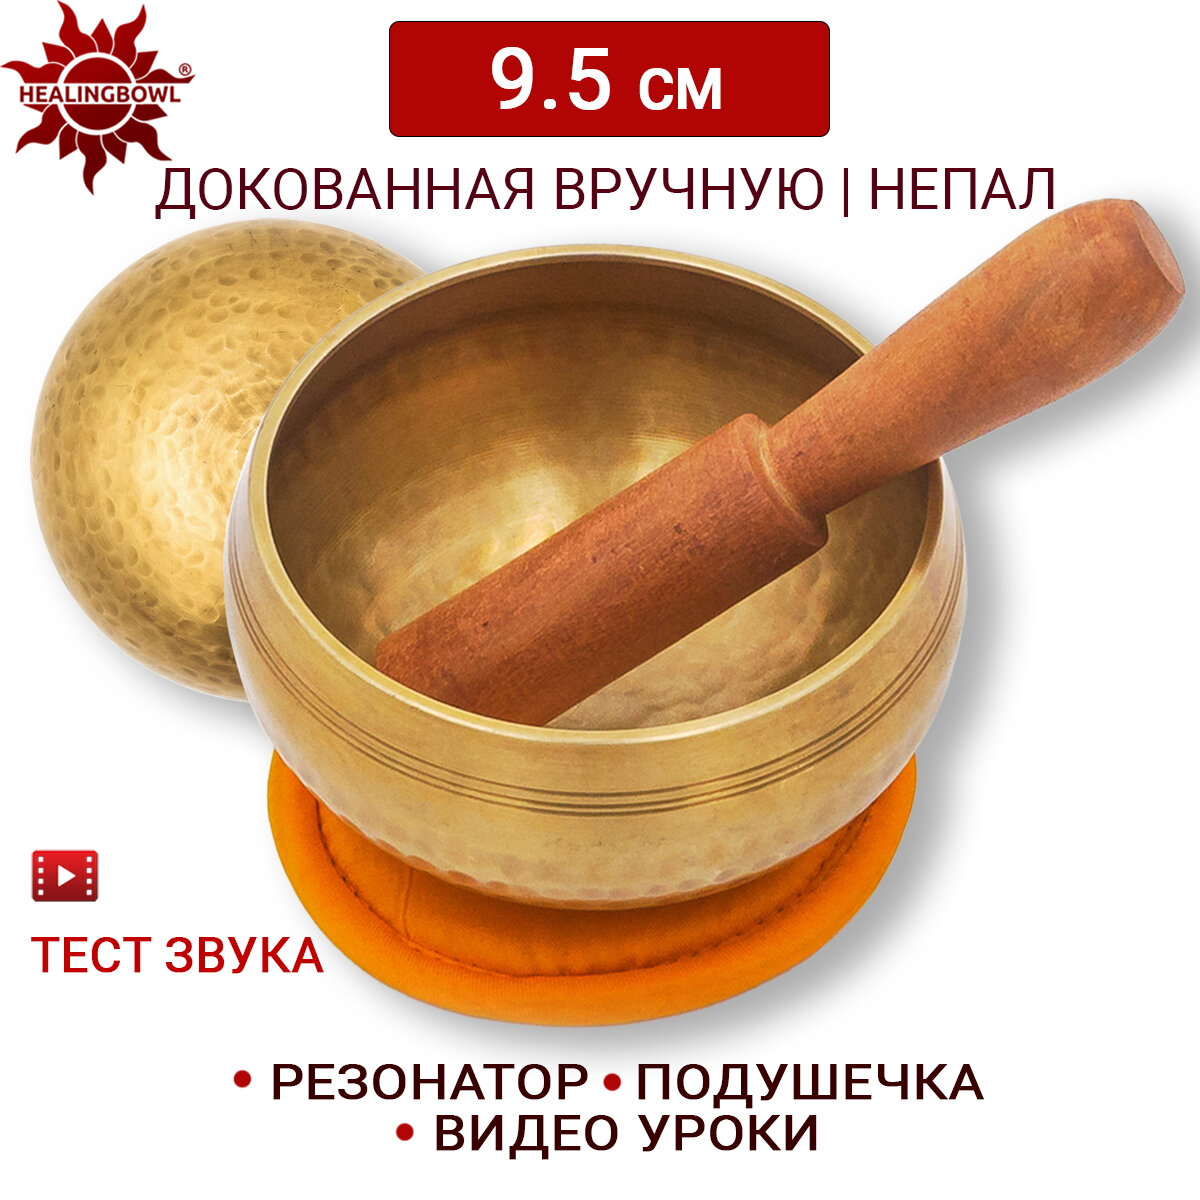 Healingbowl / Тибетская поющая чаша полукованая 9.5 см / Непал / в комплекте чаша, стик, подушечка оранжевая